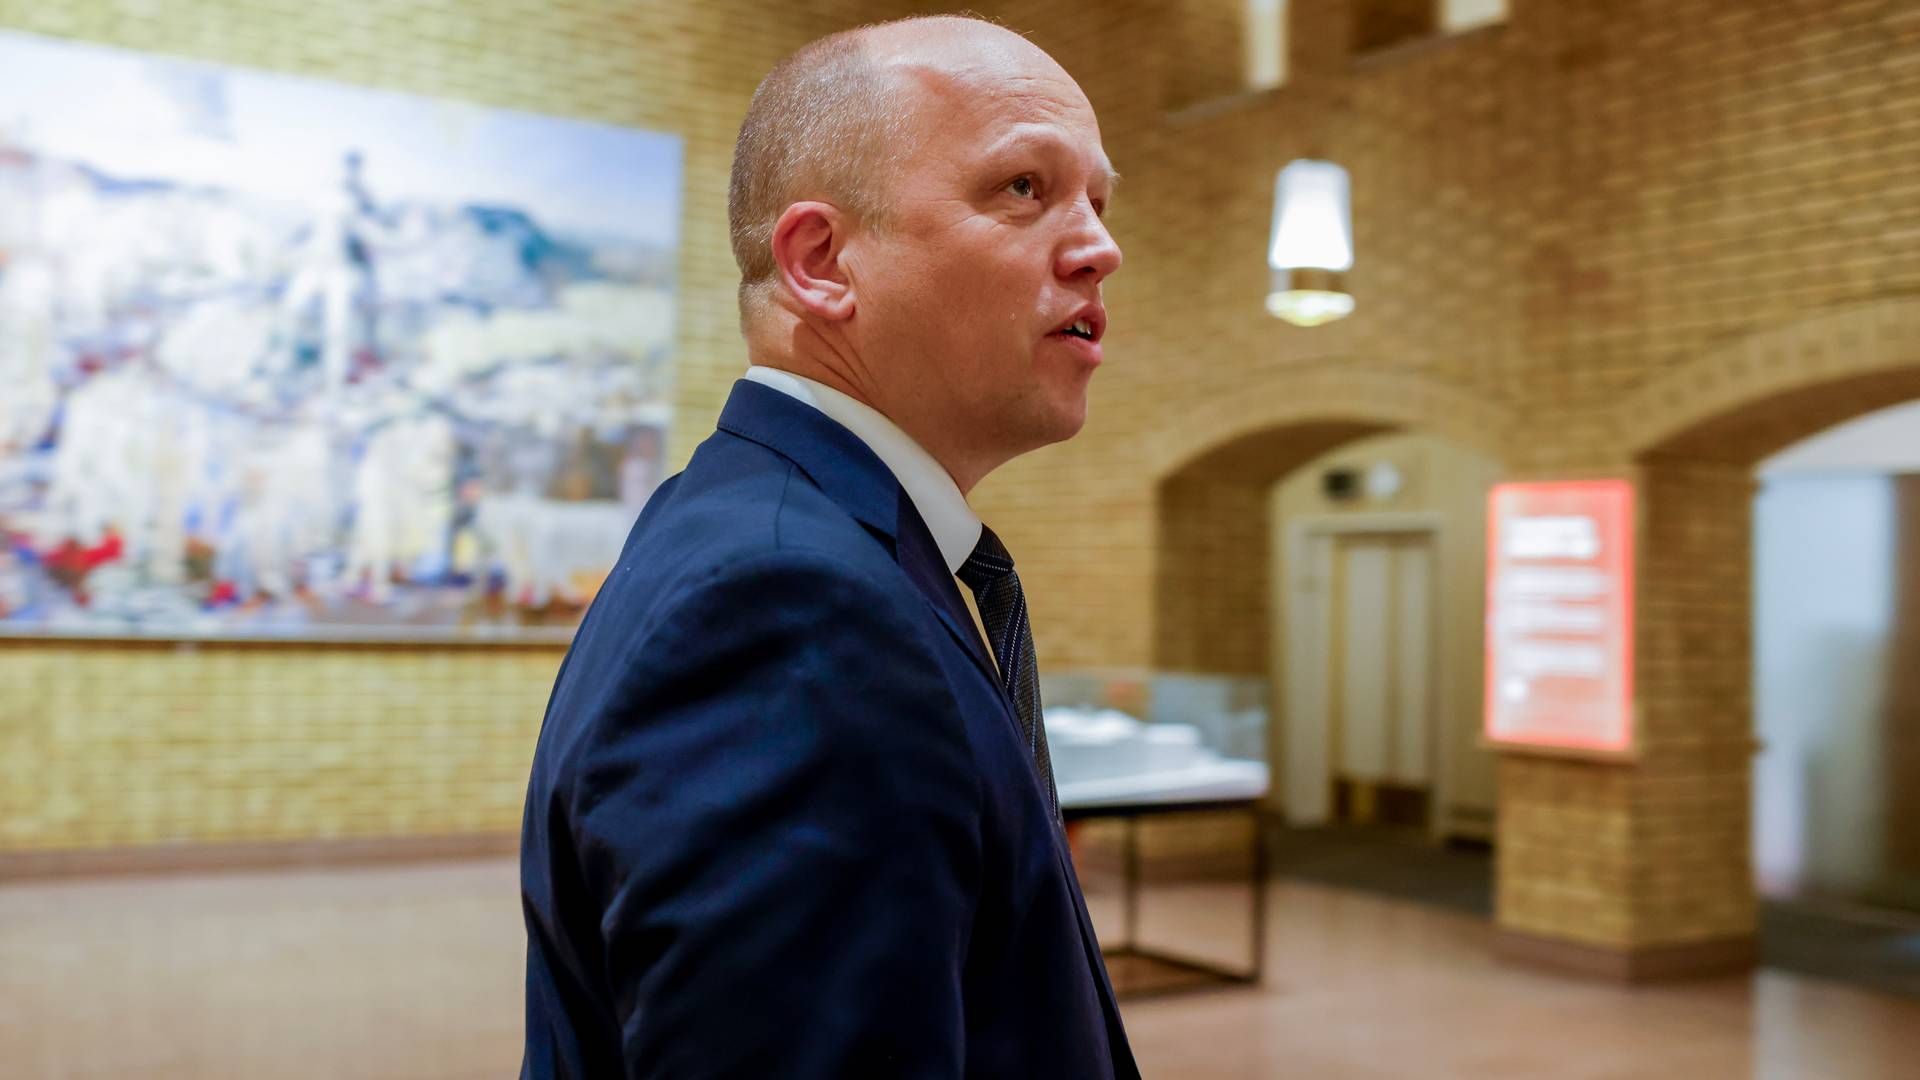 STATSBUDSJETTET: Finansminister Trygve Slagsvold Vedum (Sp) legger fram Statsbudsjettet på Stortinget. | Foto: Hanna Johre/NTB